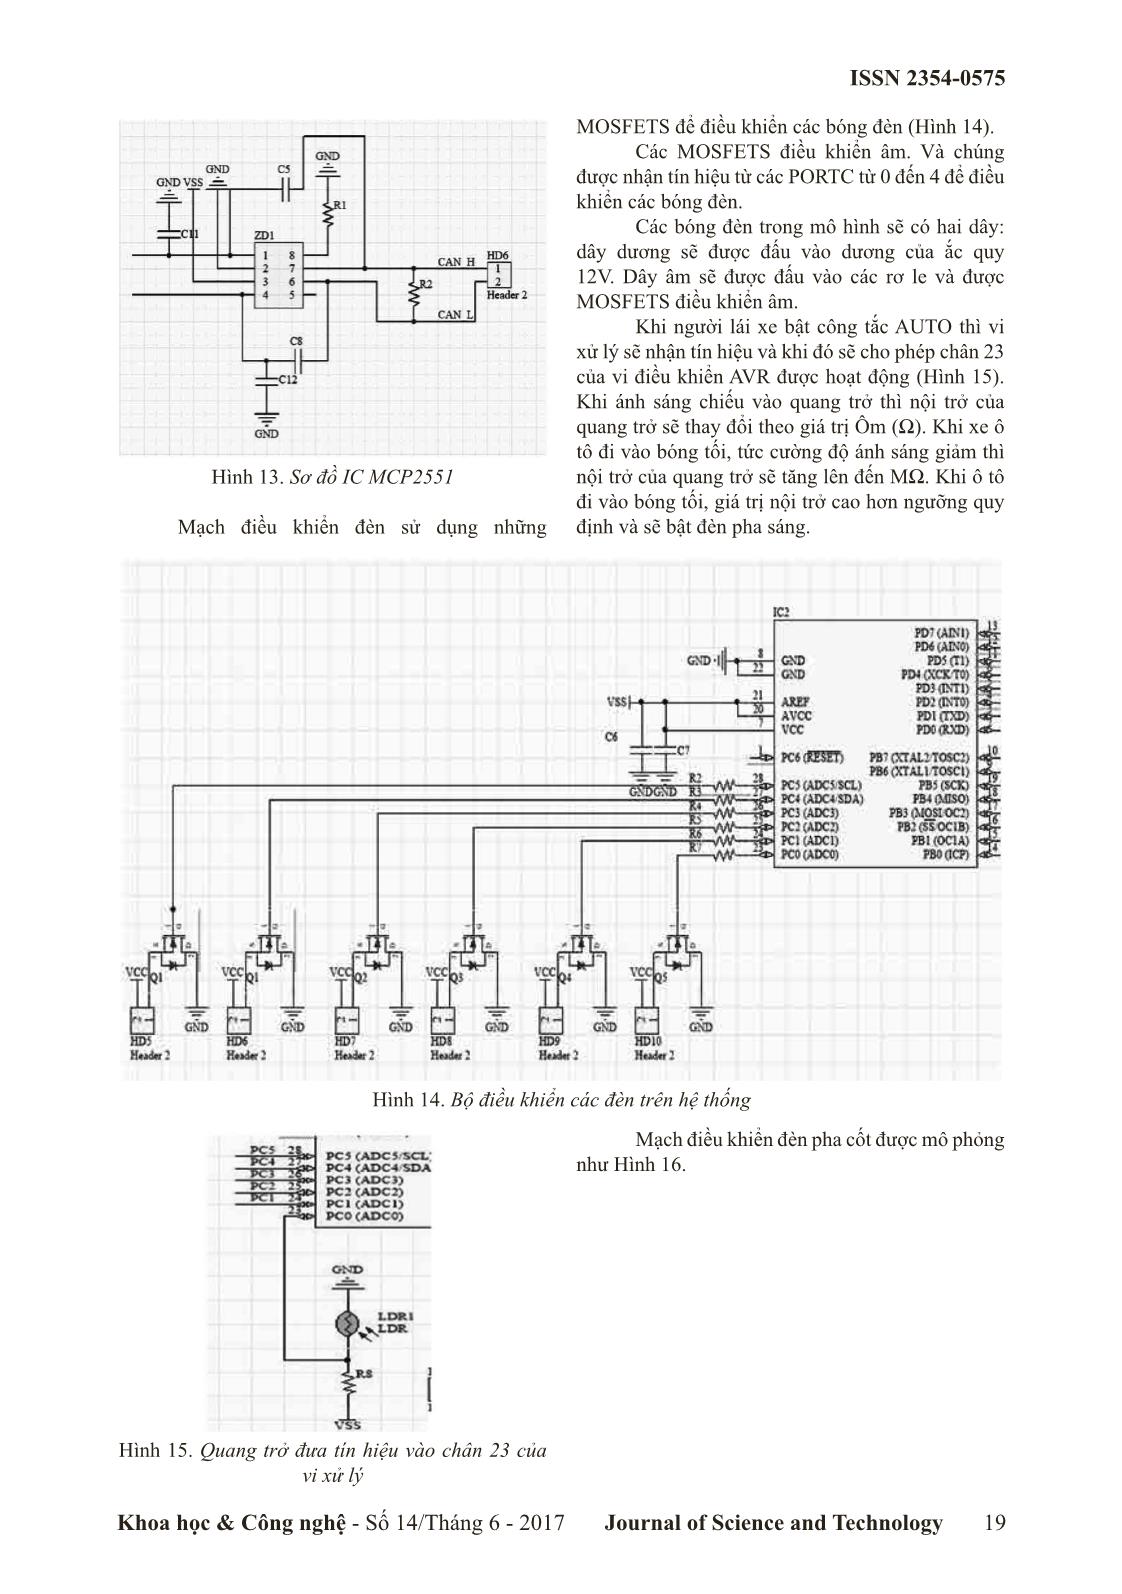 Nghiên cứu mô phỏng mạch thiết kế điều khiển đèn pha ô tô bằng mạng can sử dụng phần mềm proteus 8.1 trang 4